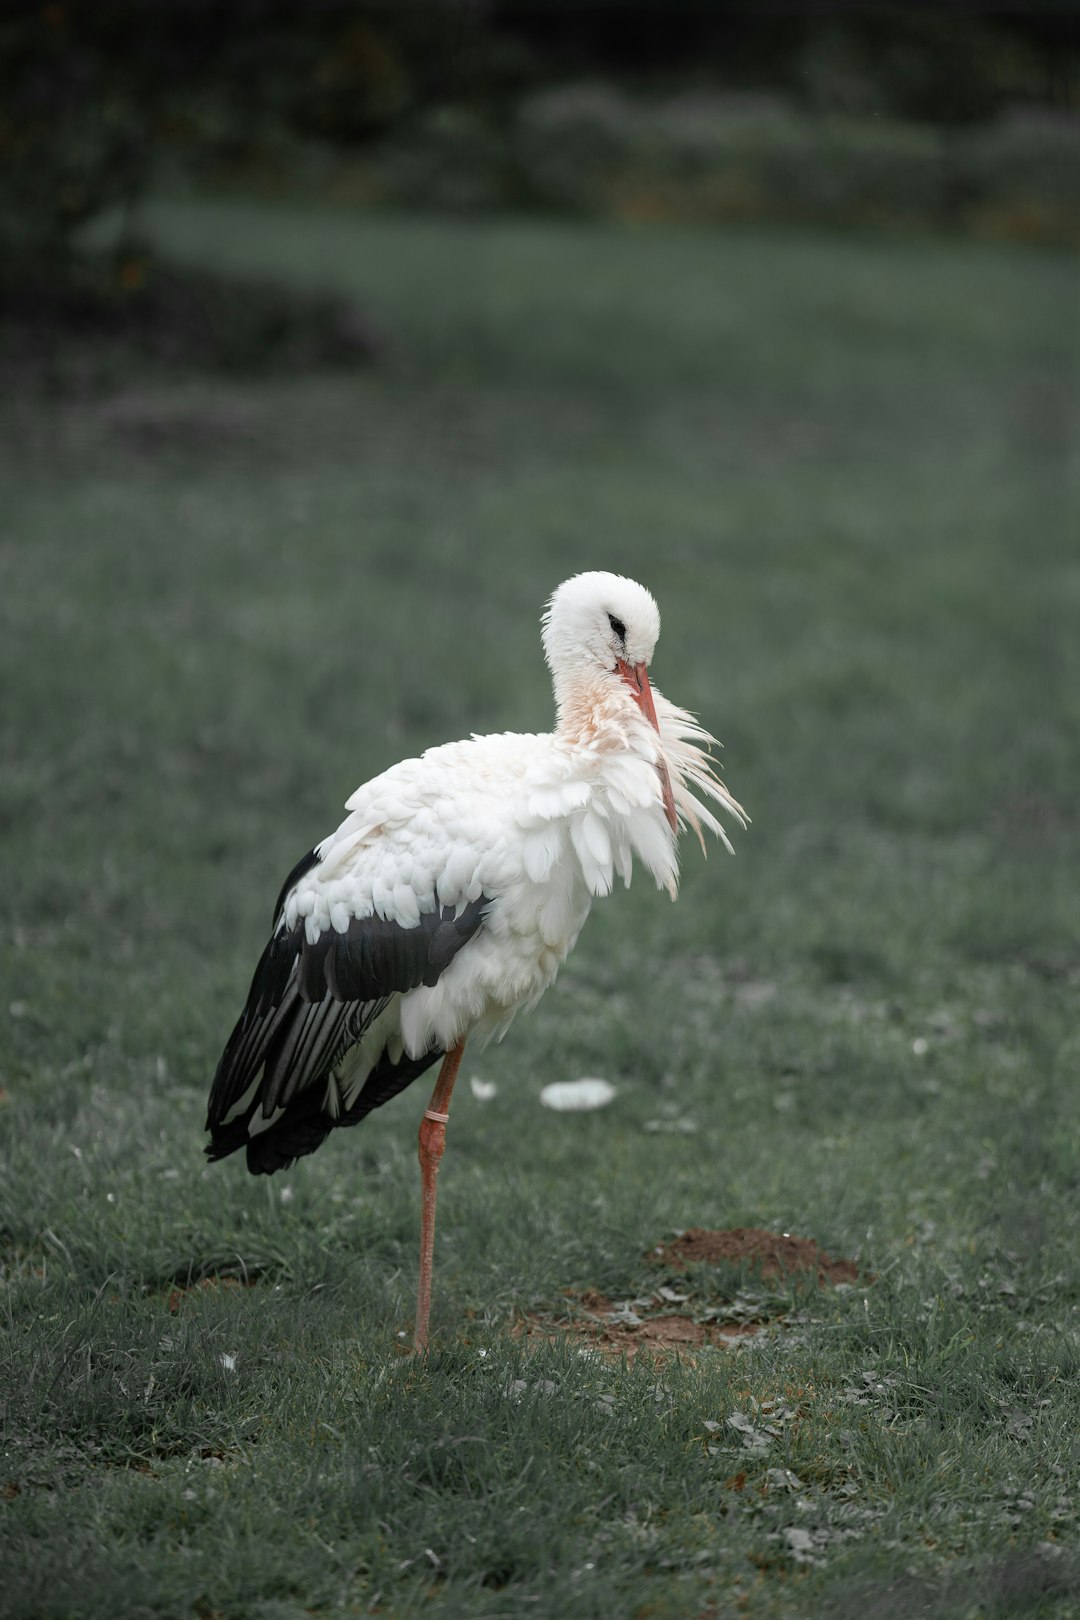  white stork on green grass during daytime stork